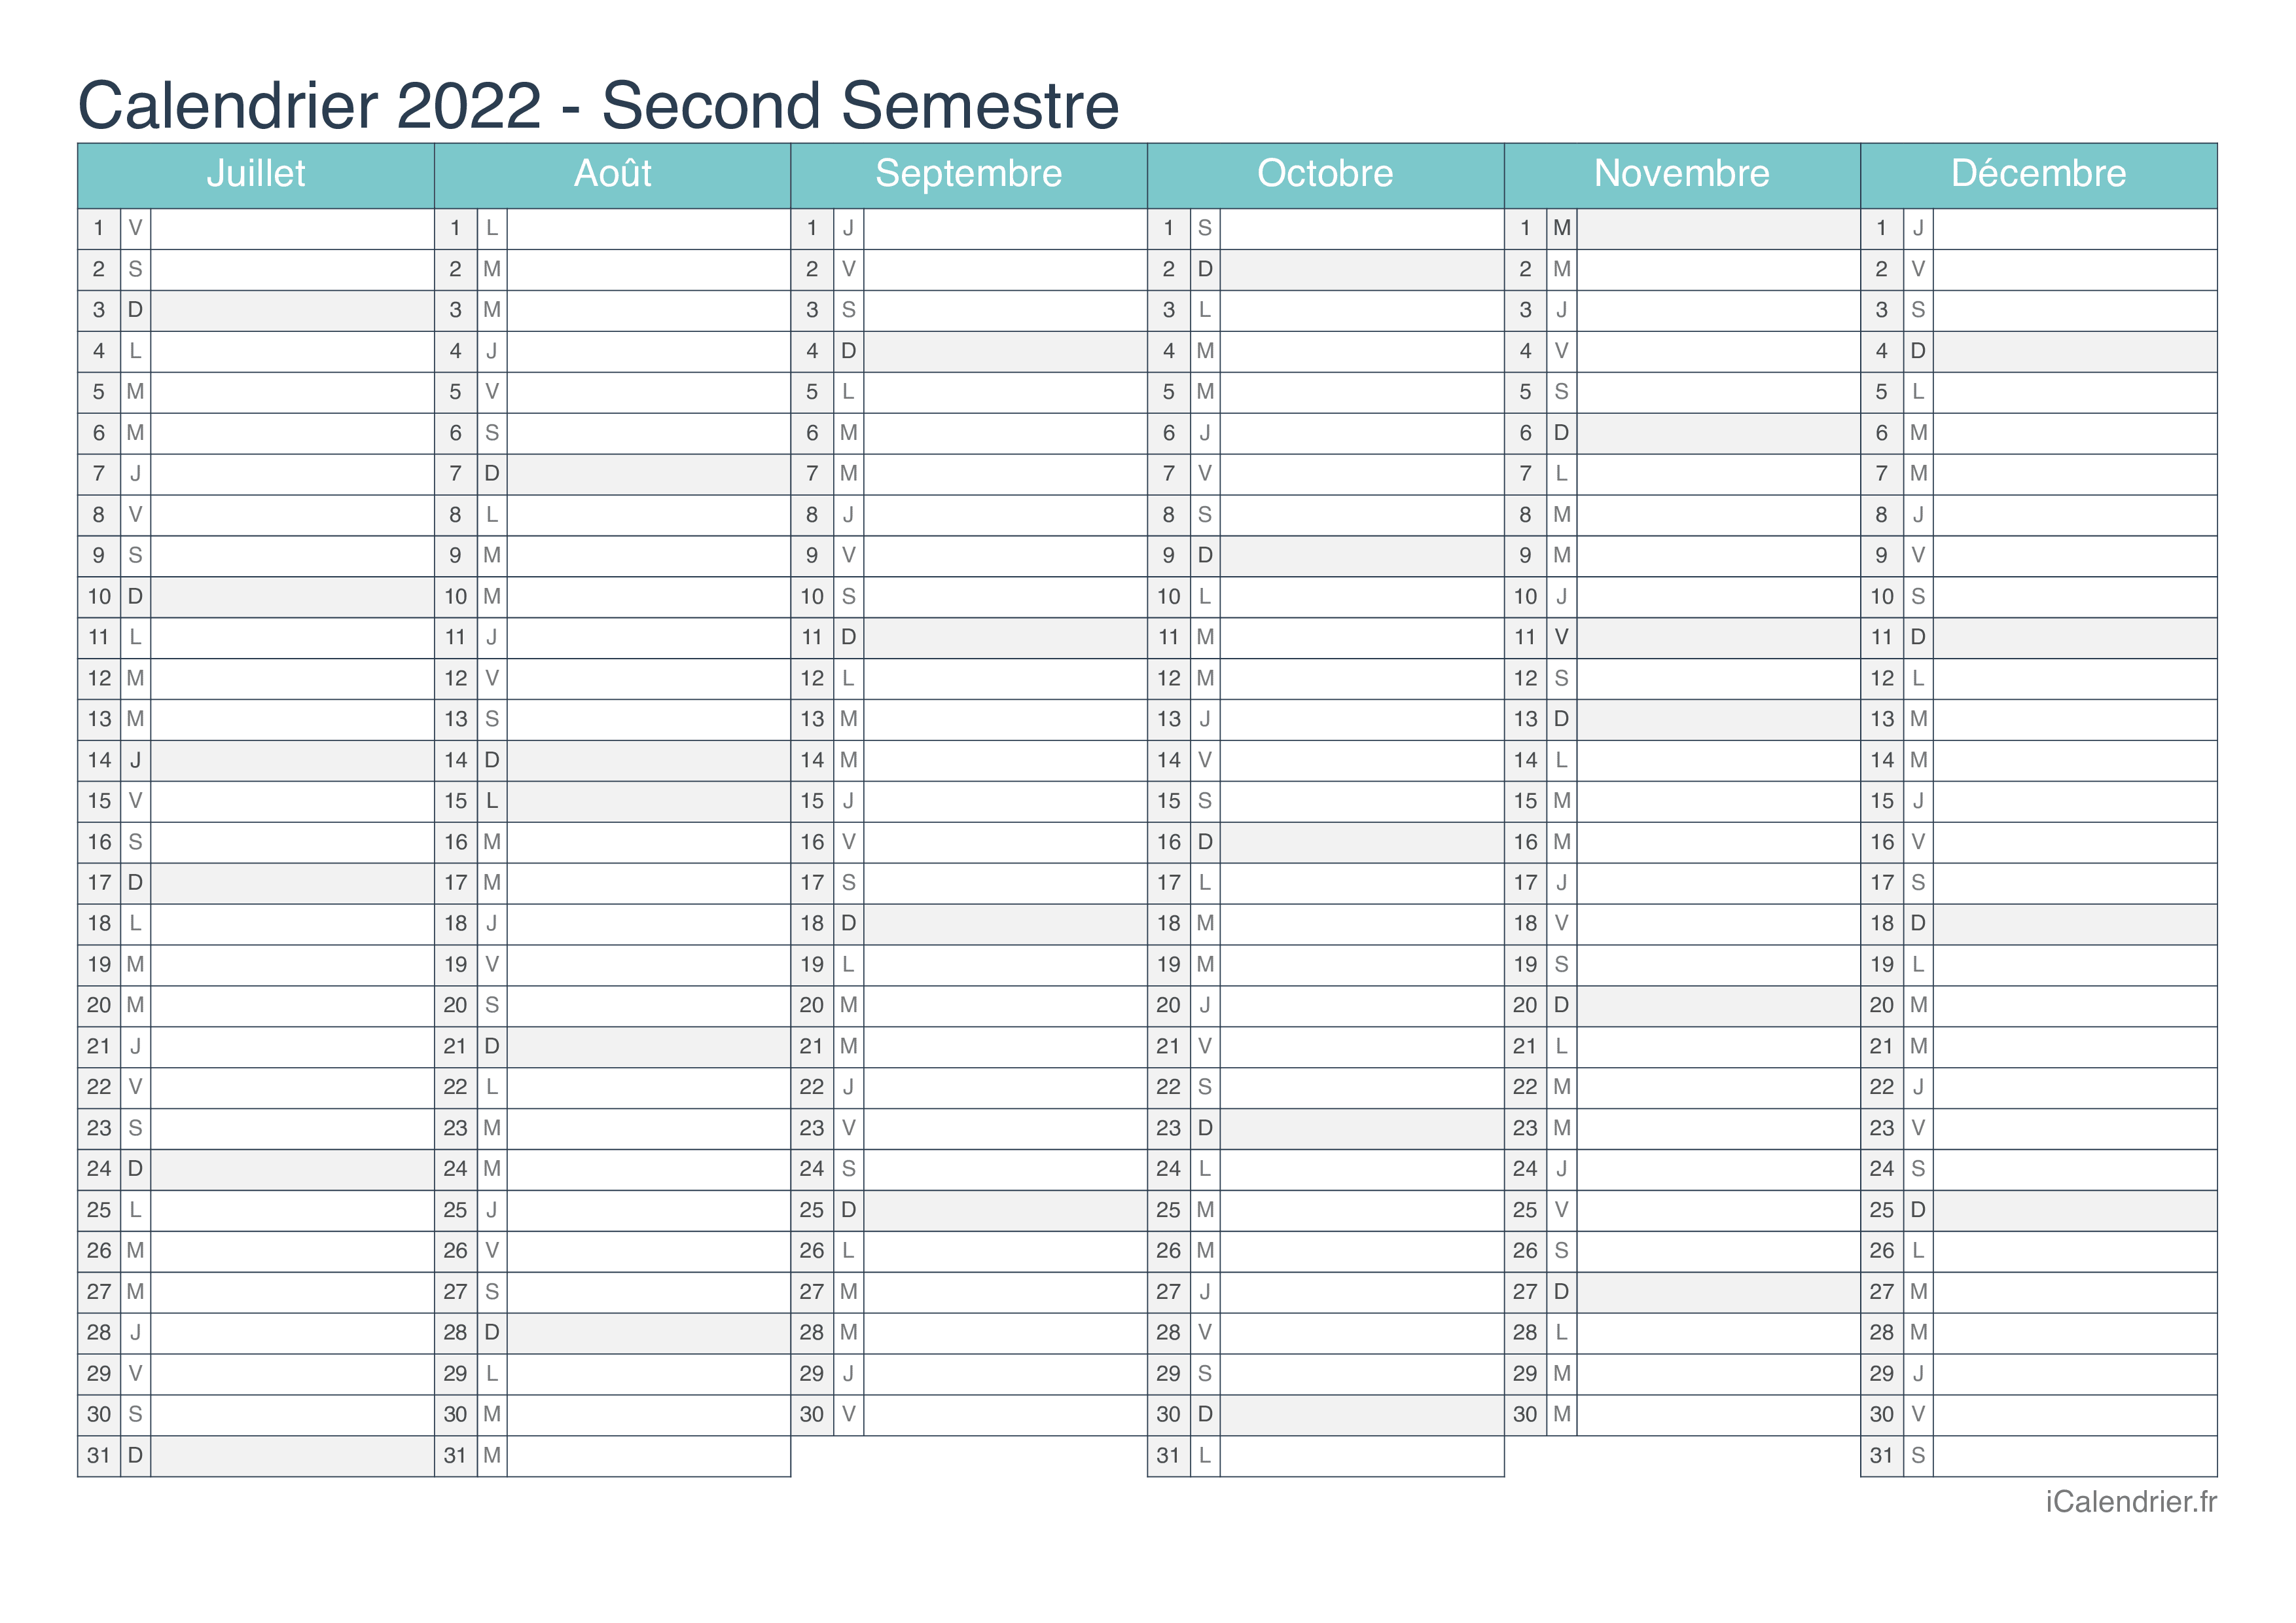 Excel Calendrier 2022 Calendrier 2022 à imprimer PDF et Excel   iCalendrier